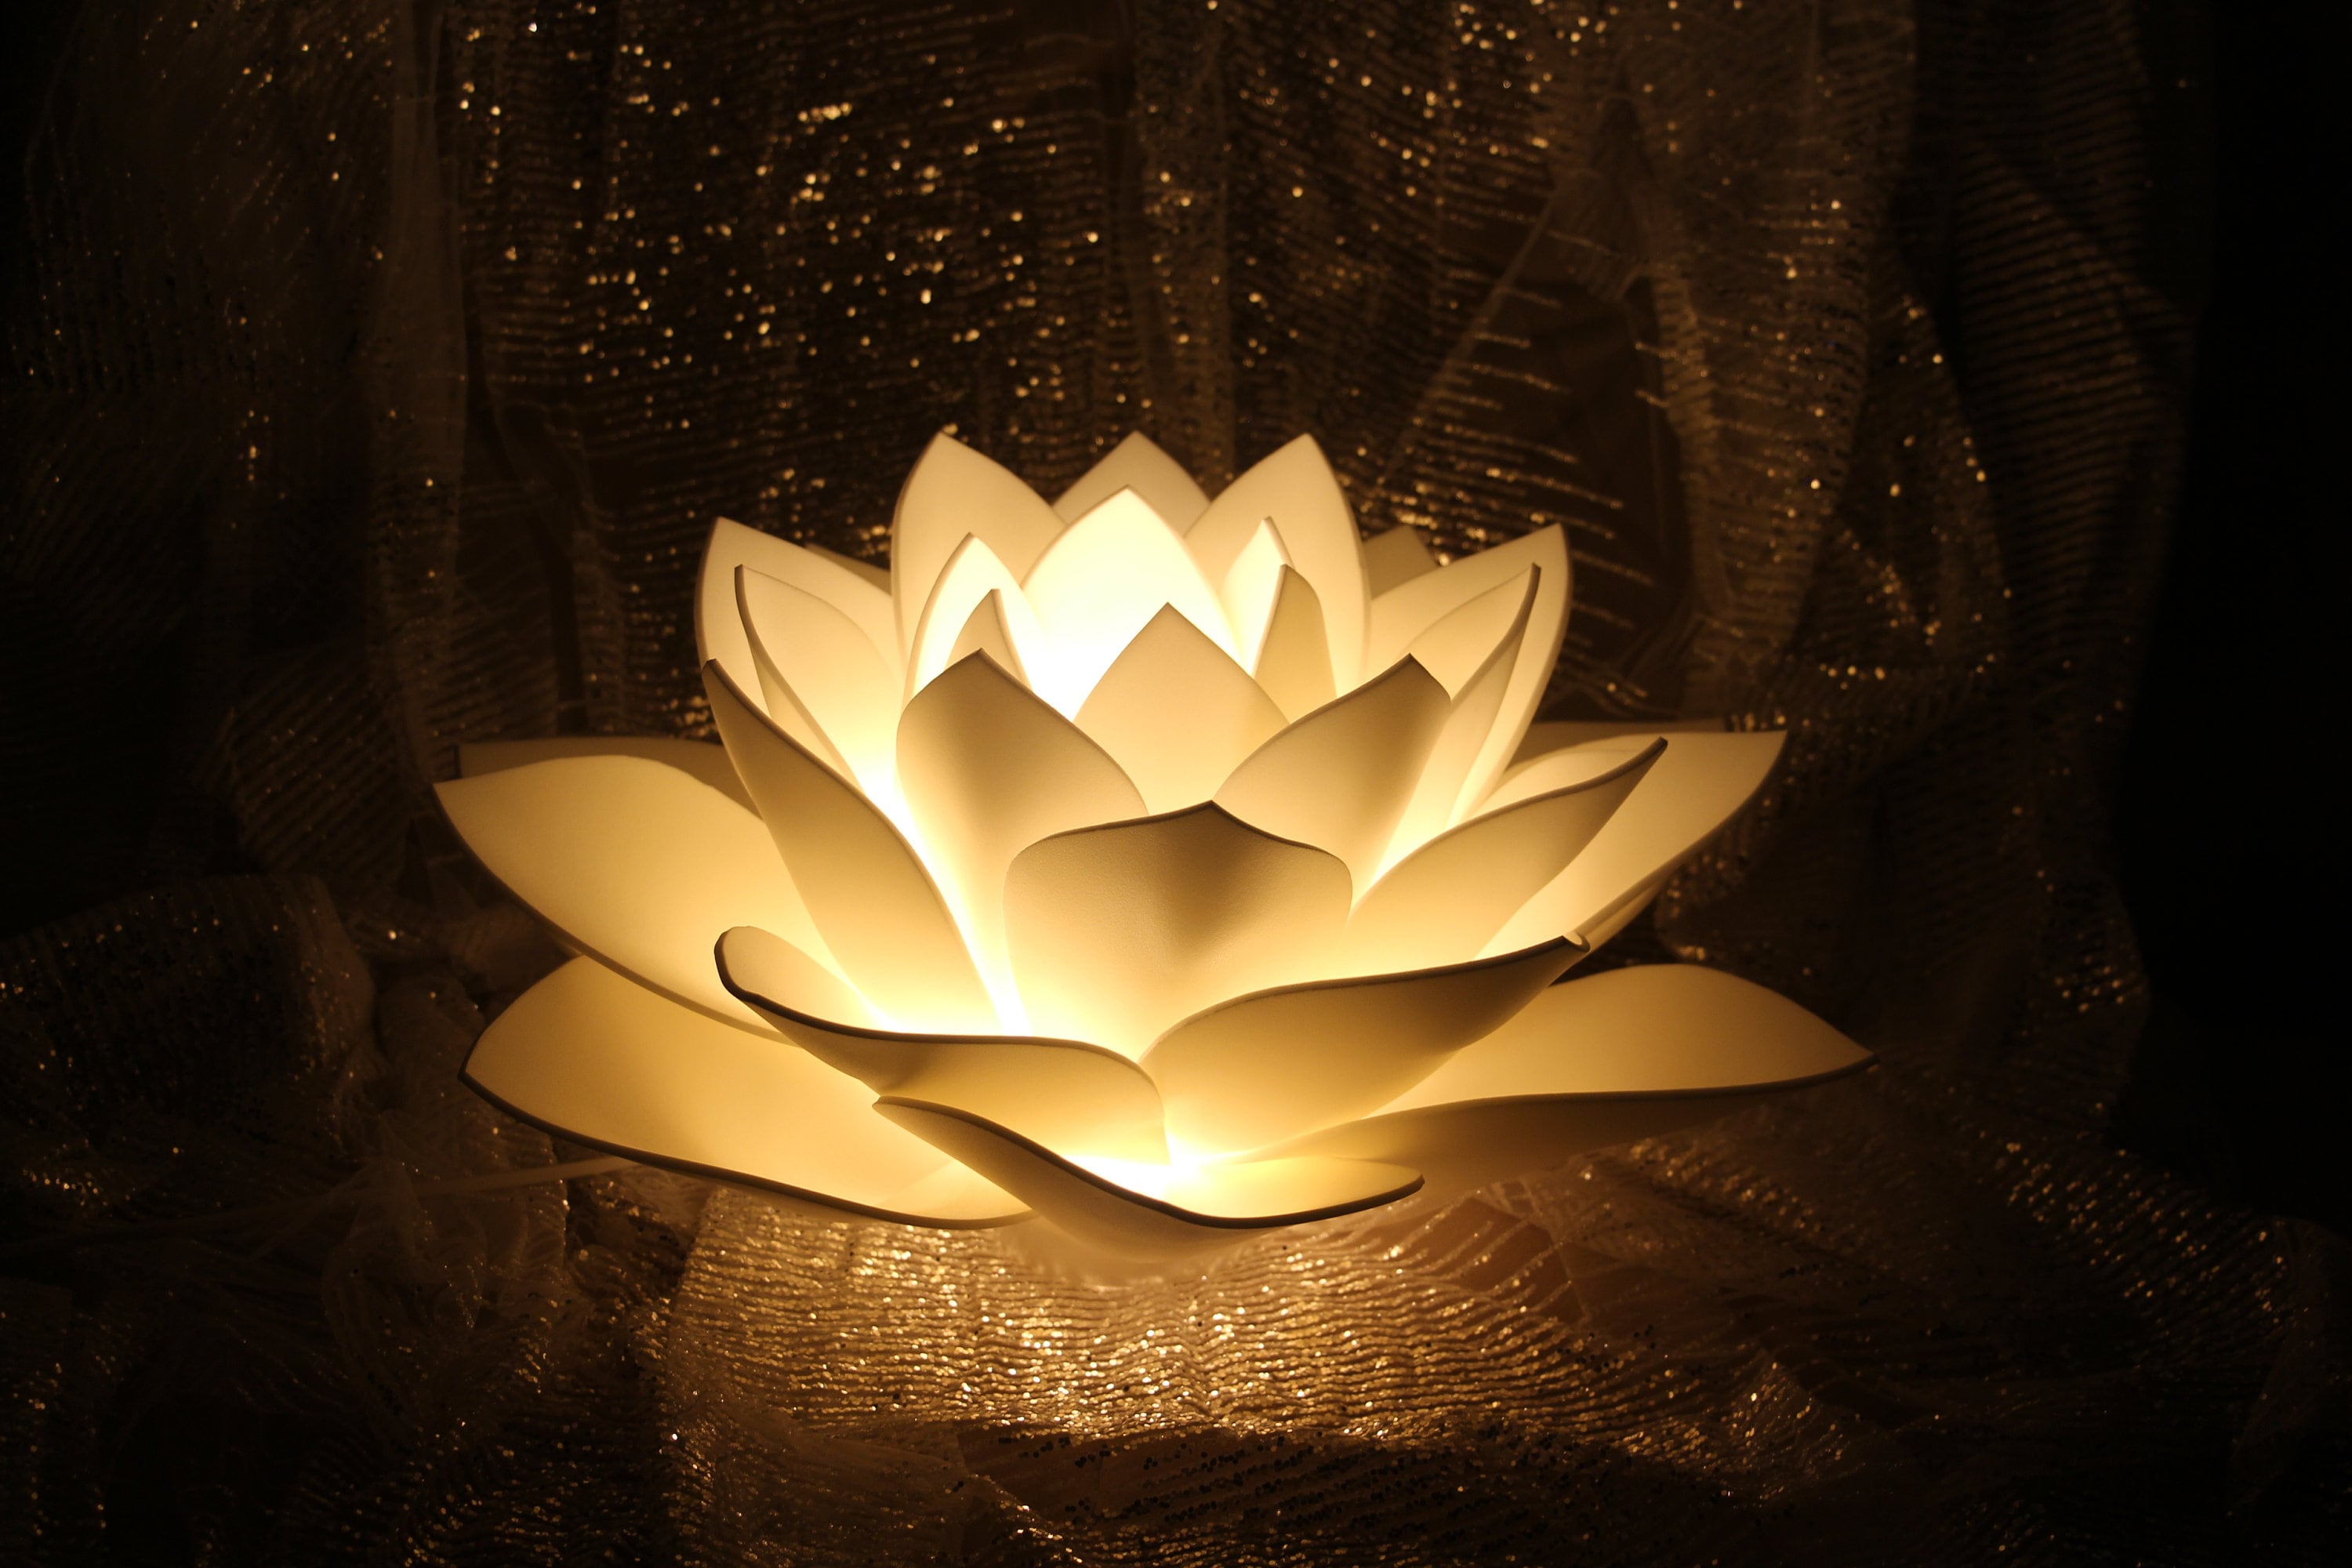 Lotus lamp - Etsy